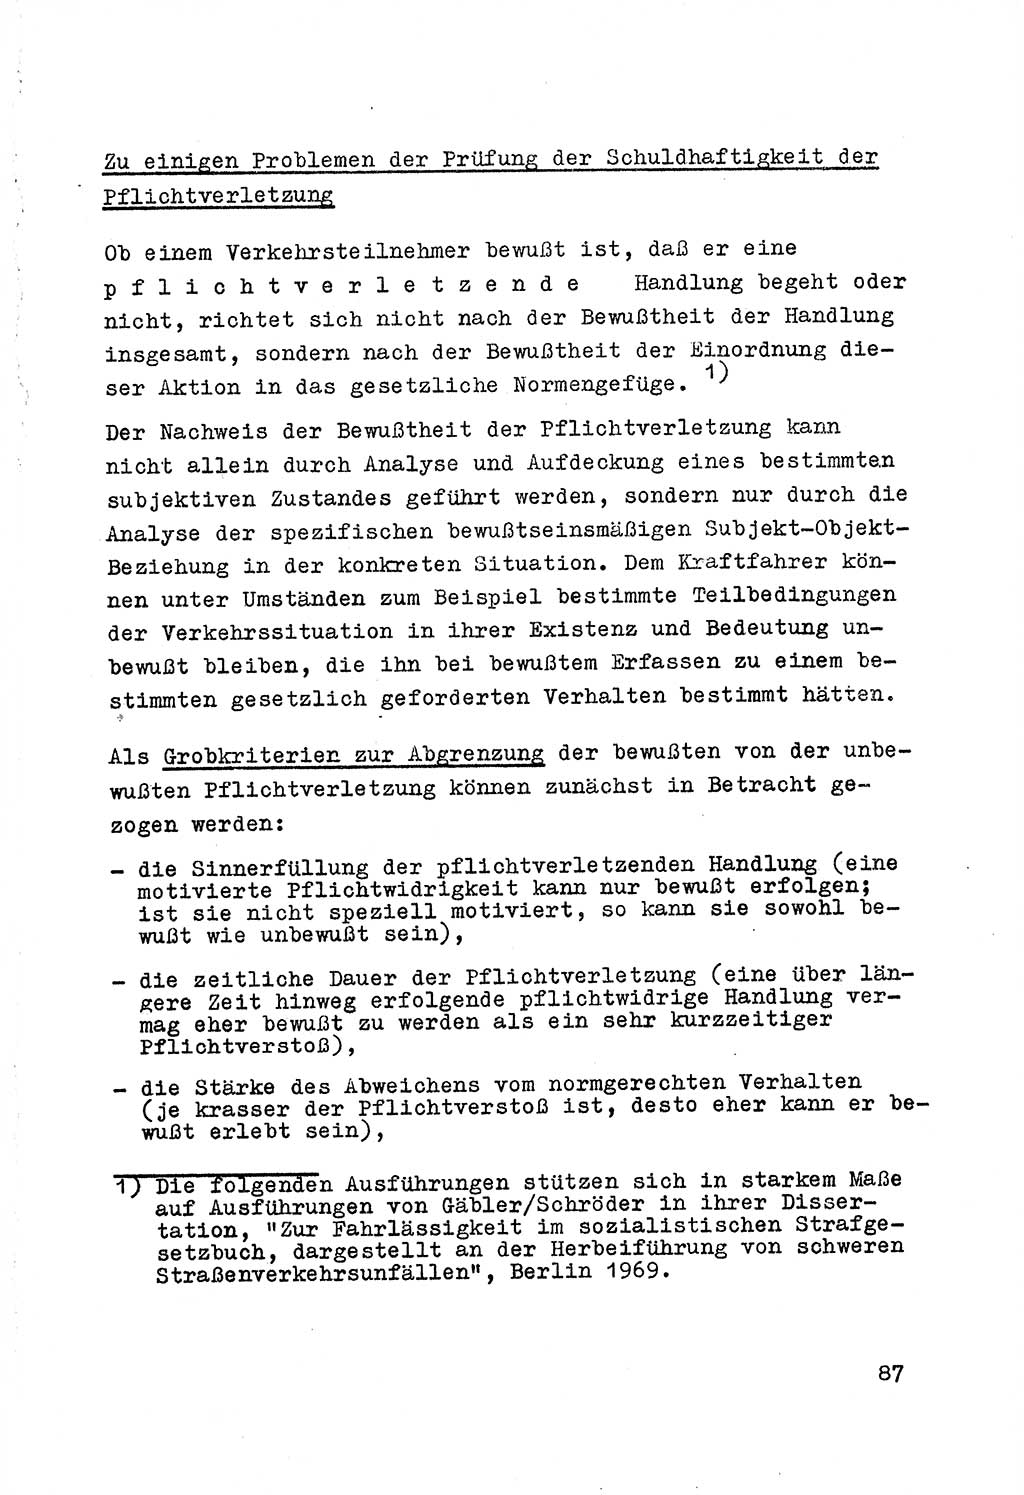 Strafrecht der DDR (Deutsche Demokratische Republik), Besonderer Teil, Lehrmaterial, Heft 7 1970, Seite 87 (Strafr. DDR BT Lehrmat. H. 7 1970, S. 87)